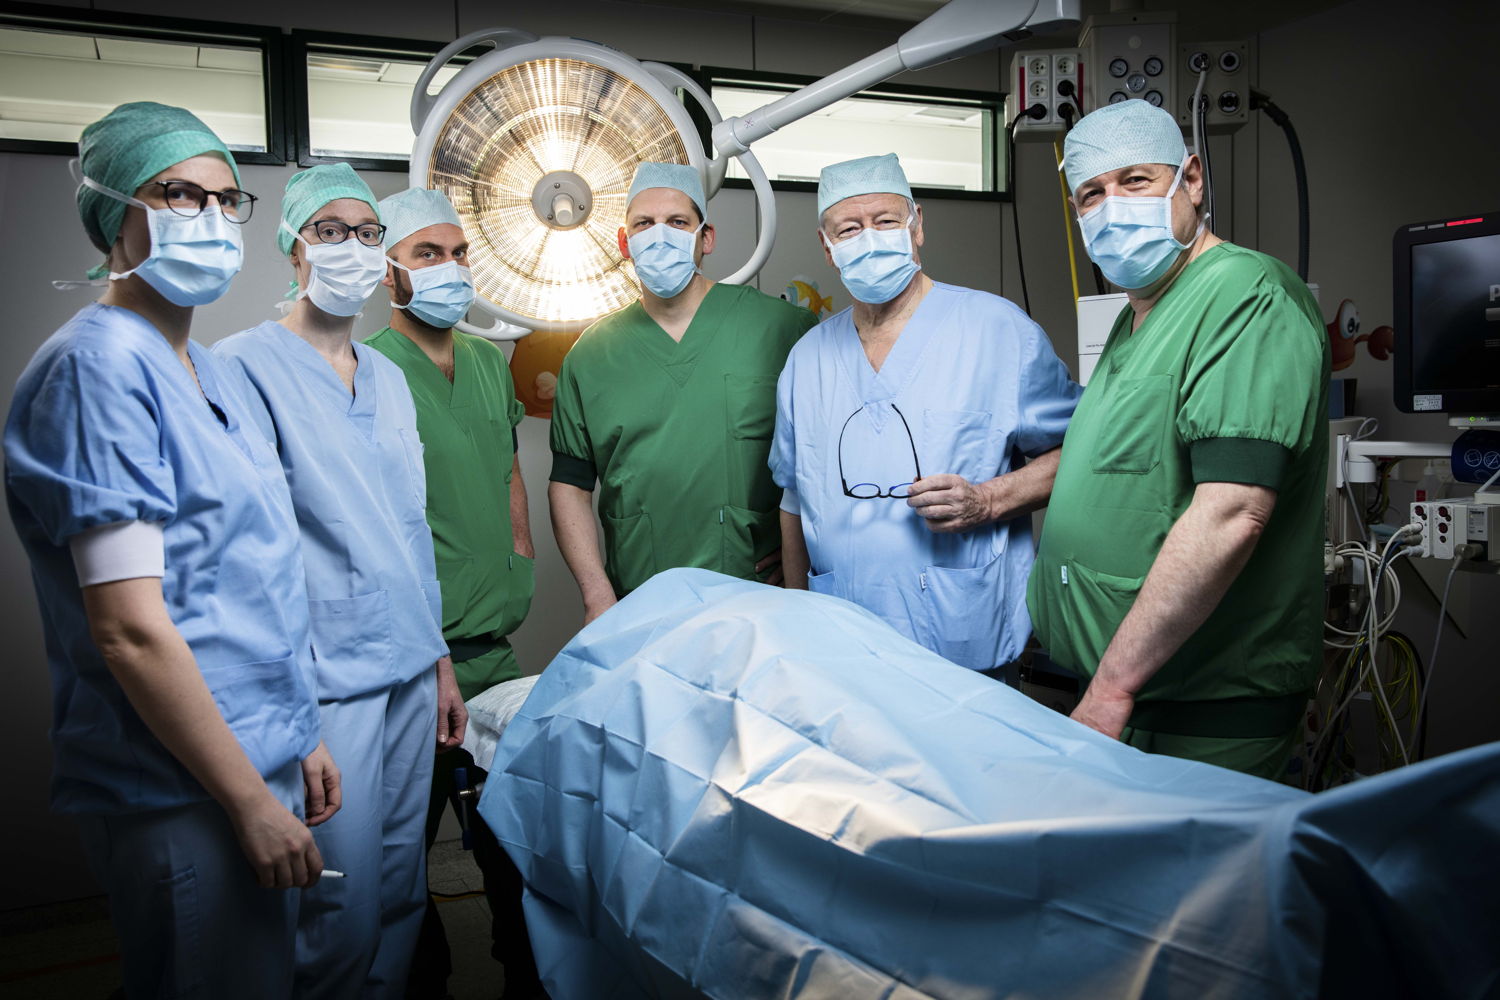 De 6 kinderchirurgen van het Saffier-centrum: (vlnr) dr. Charlotte Vercauteren (UZ Brussel), dr. Kim Vanderlinden (UZ Brussel), dr. Stijn Heyman (ZNA), dr. Dirk Vervloessem (ZNA), prof. Toon De Backer (UZ Brussel), dr. Paul Leyman (GZA)